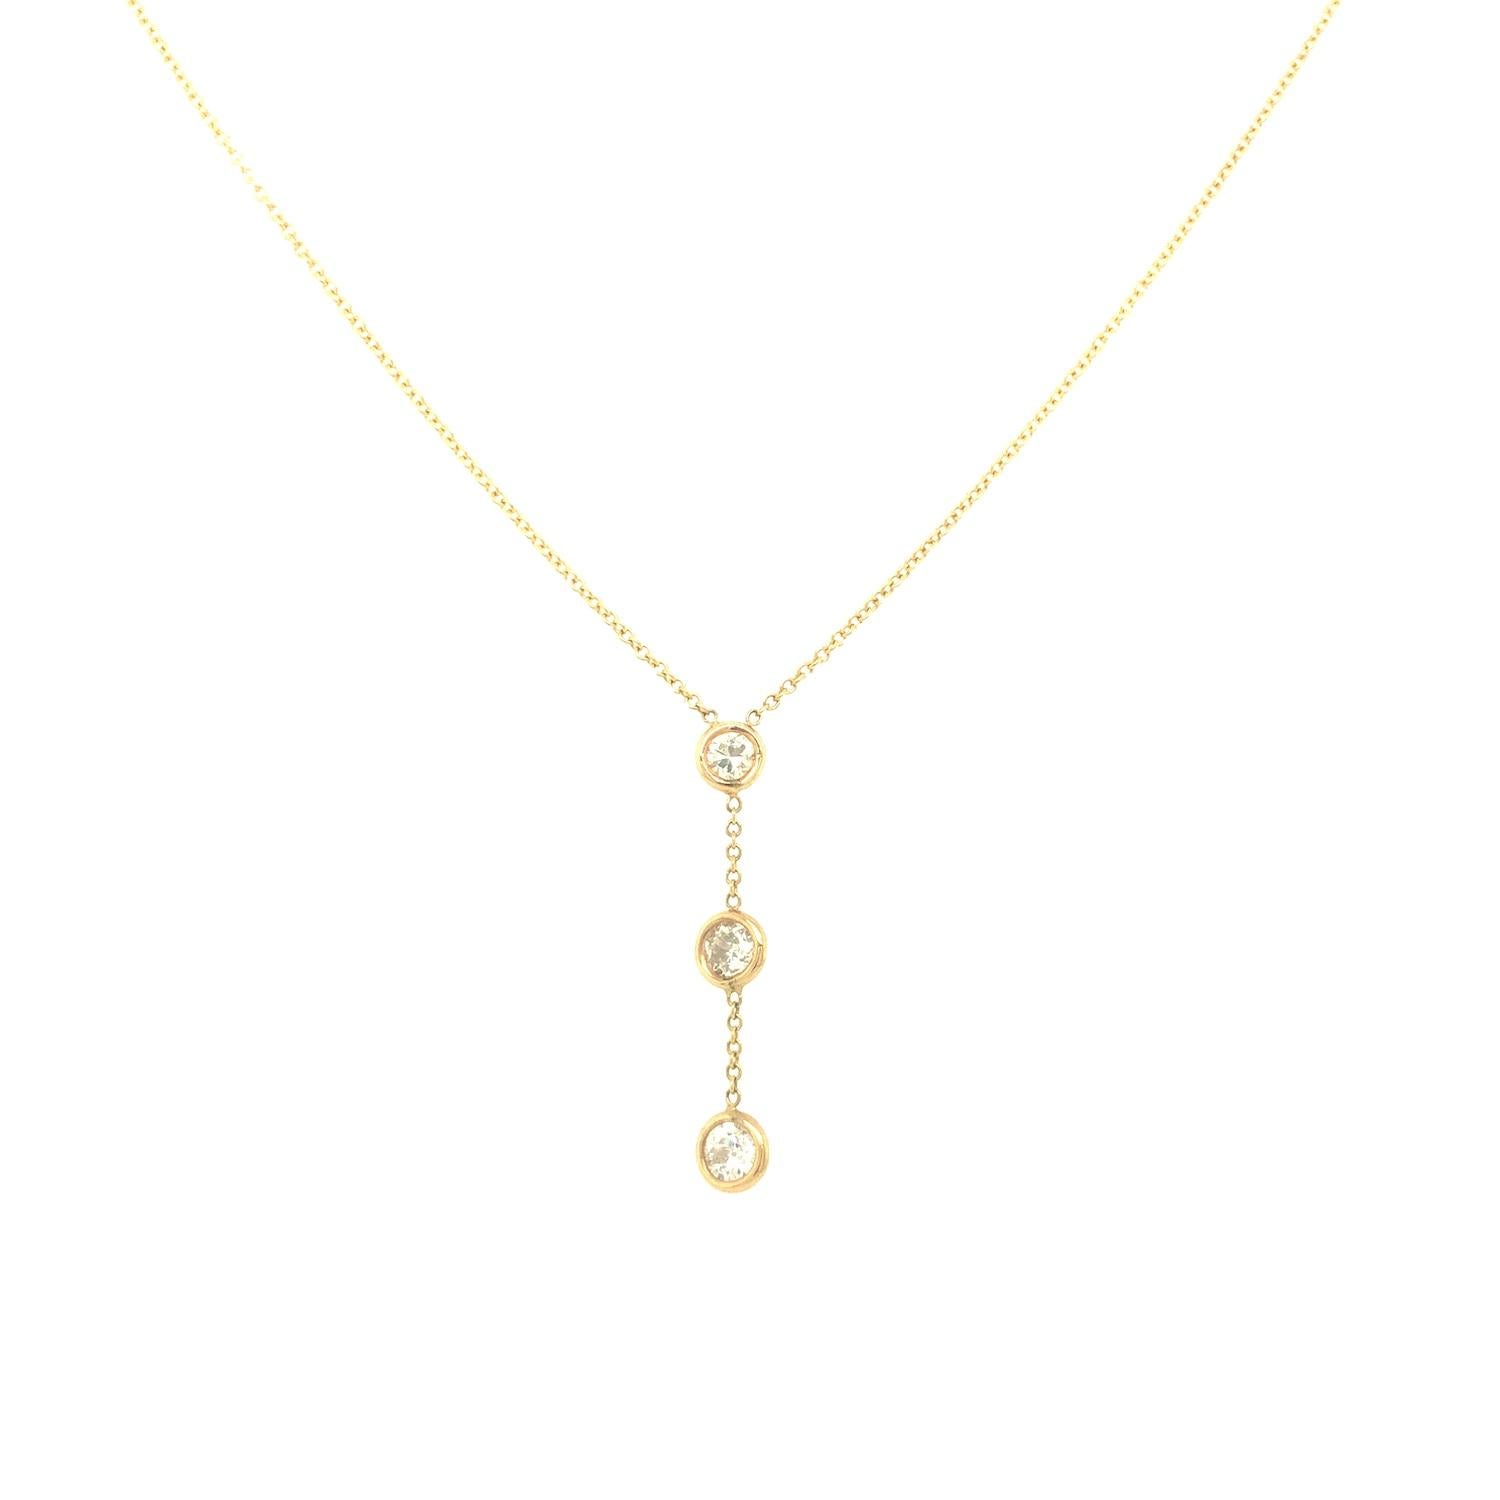 Diese süße und lustige Y-förmige Halskette zeigt drei runde Diamanten im Brillantschliff in Lünettenfassung, die an einer einfachen Kette aus 14 Karat Gelbgold baumeln. Die Diamanten haben ein Gesamtgewicht von 0,50 Karat und sind von der Farbe G-H